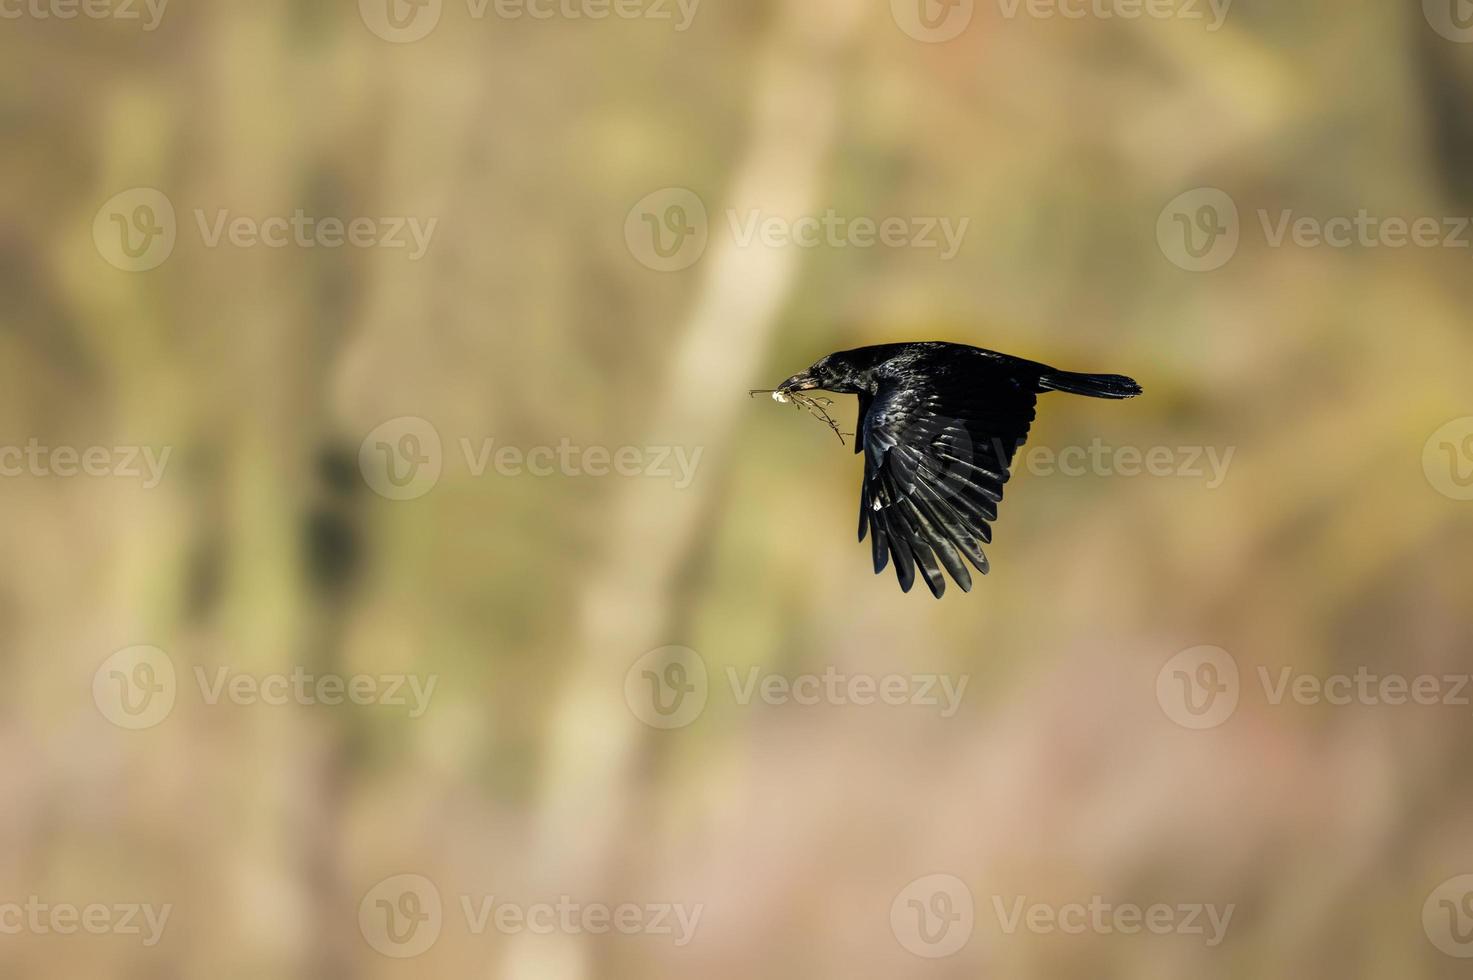 corbeau, corvus corone, voler avec du matériel de nidification dans son bec photo